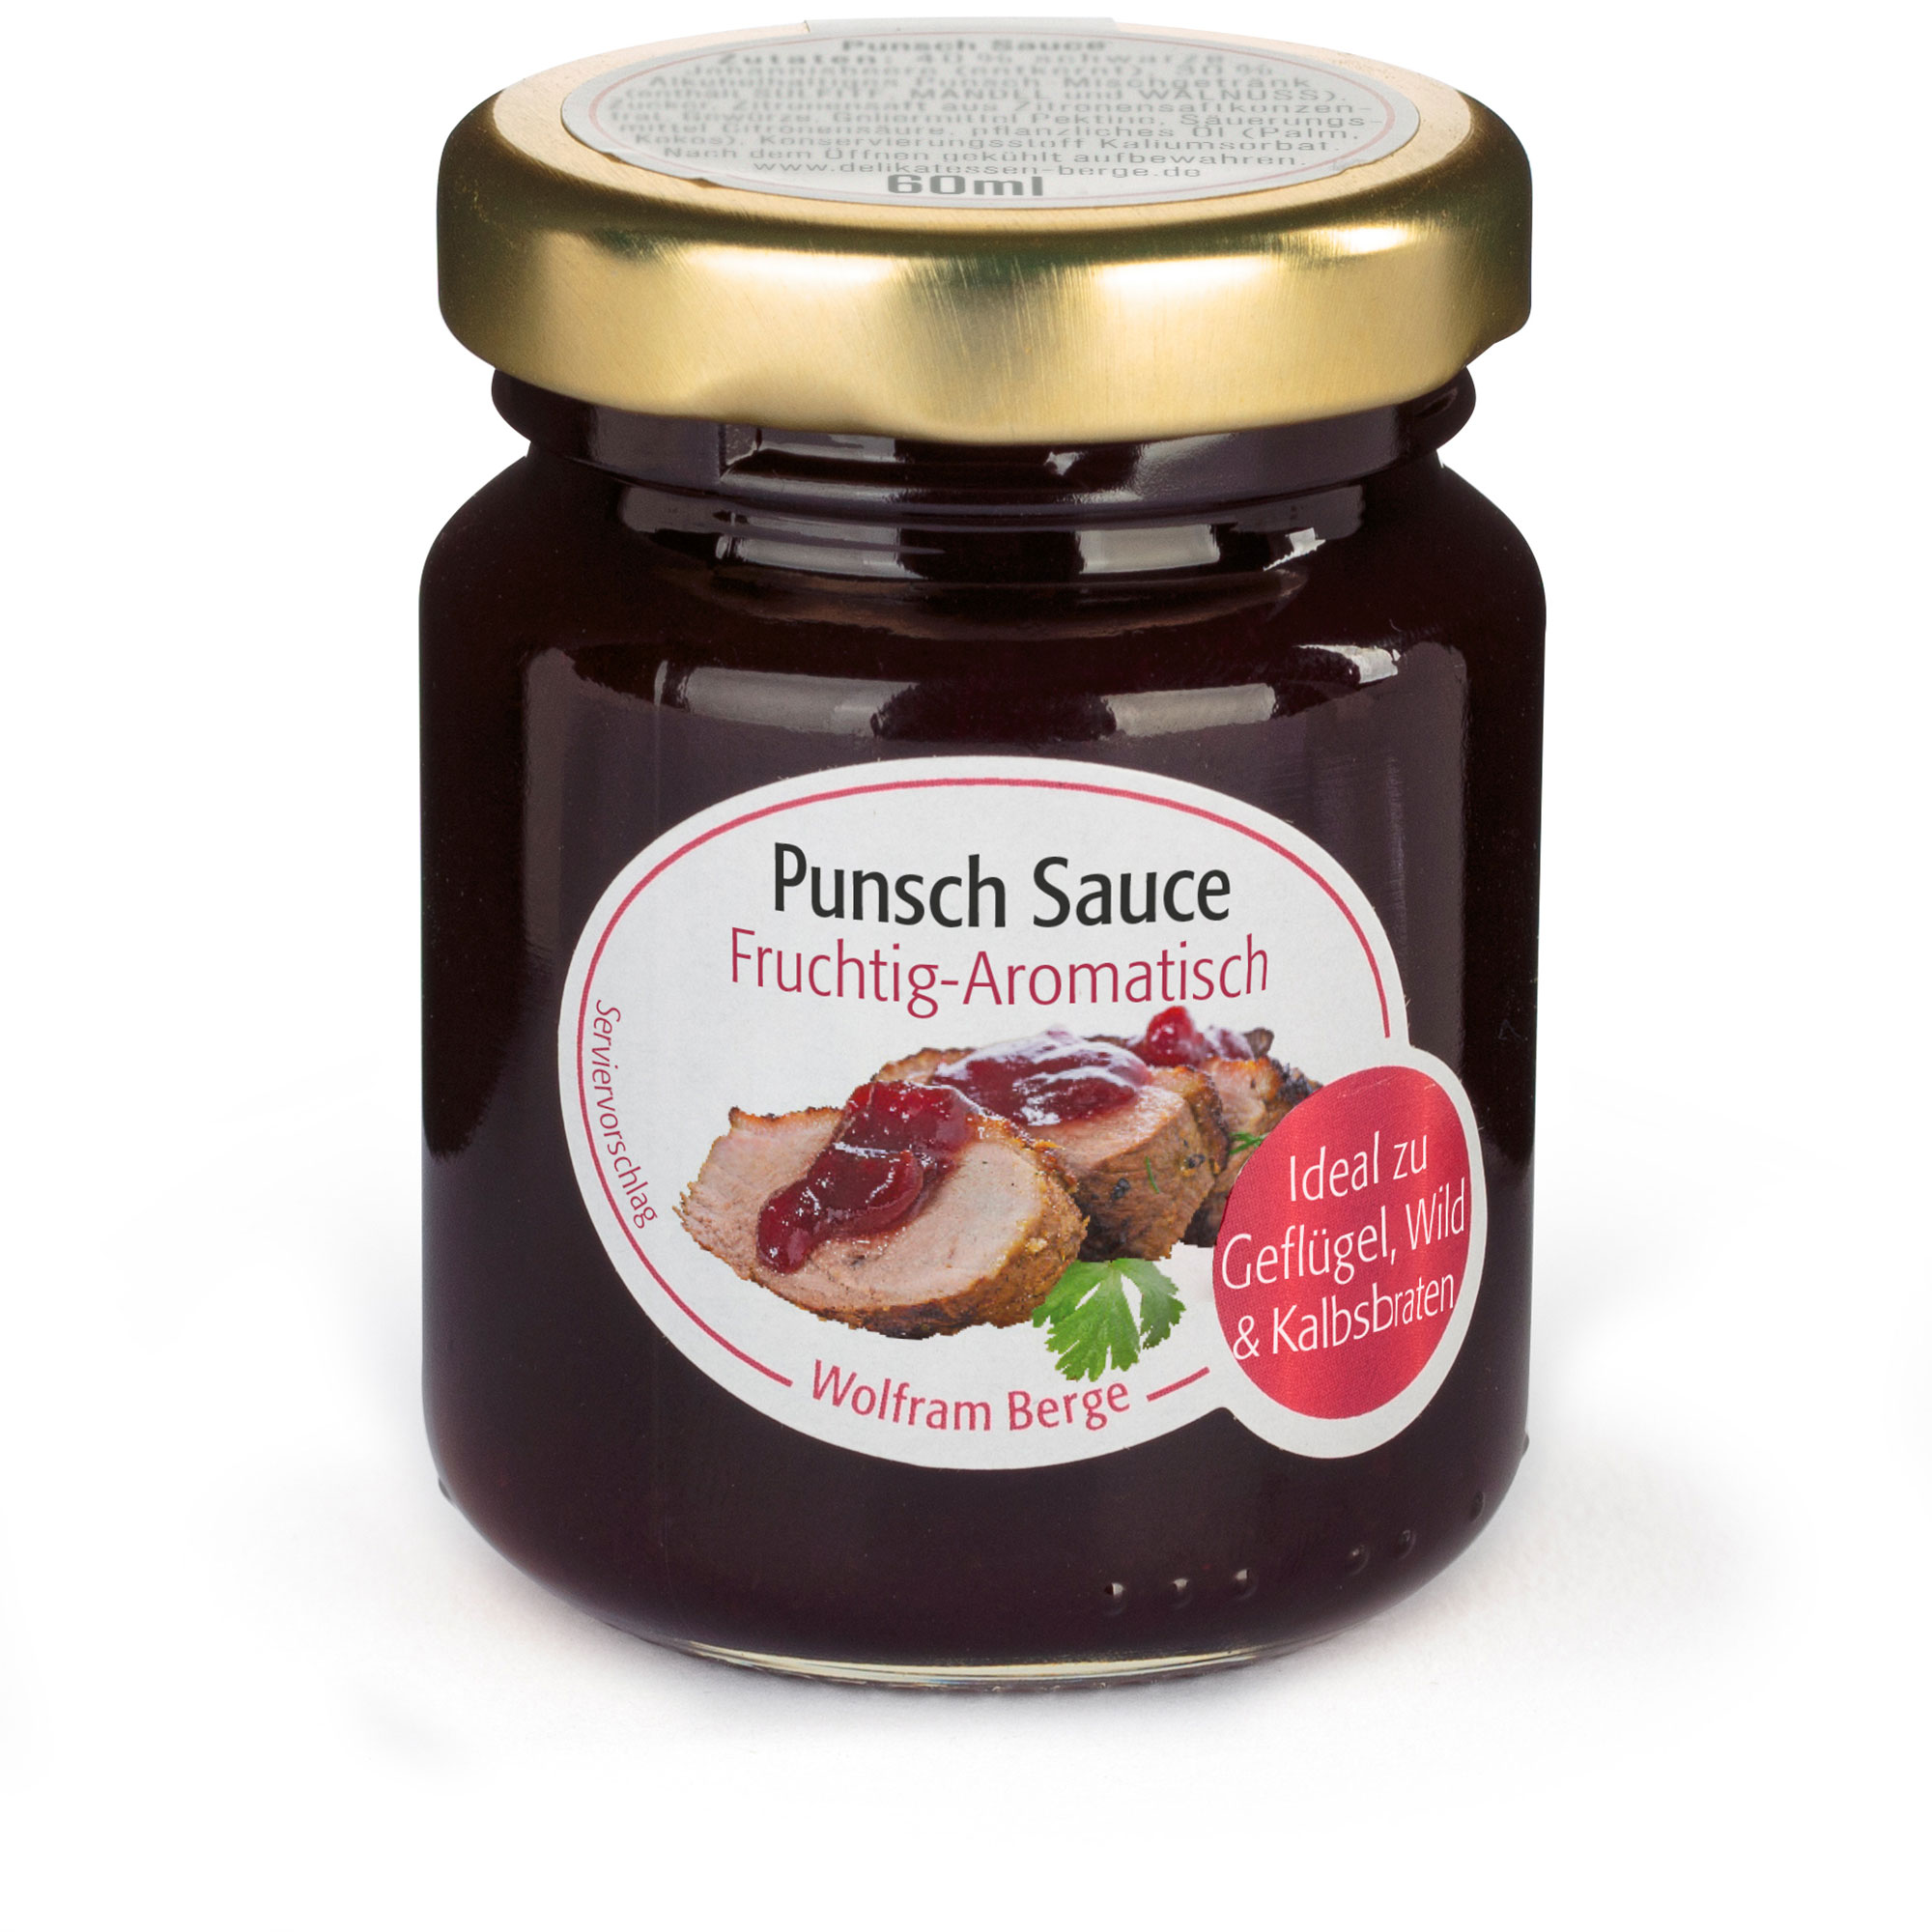 Punsch Sauce